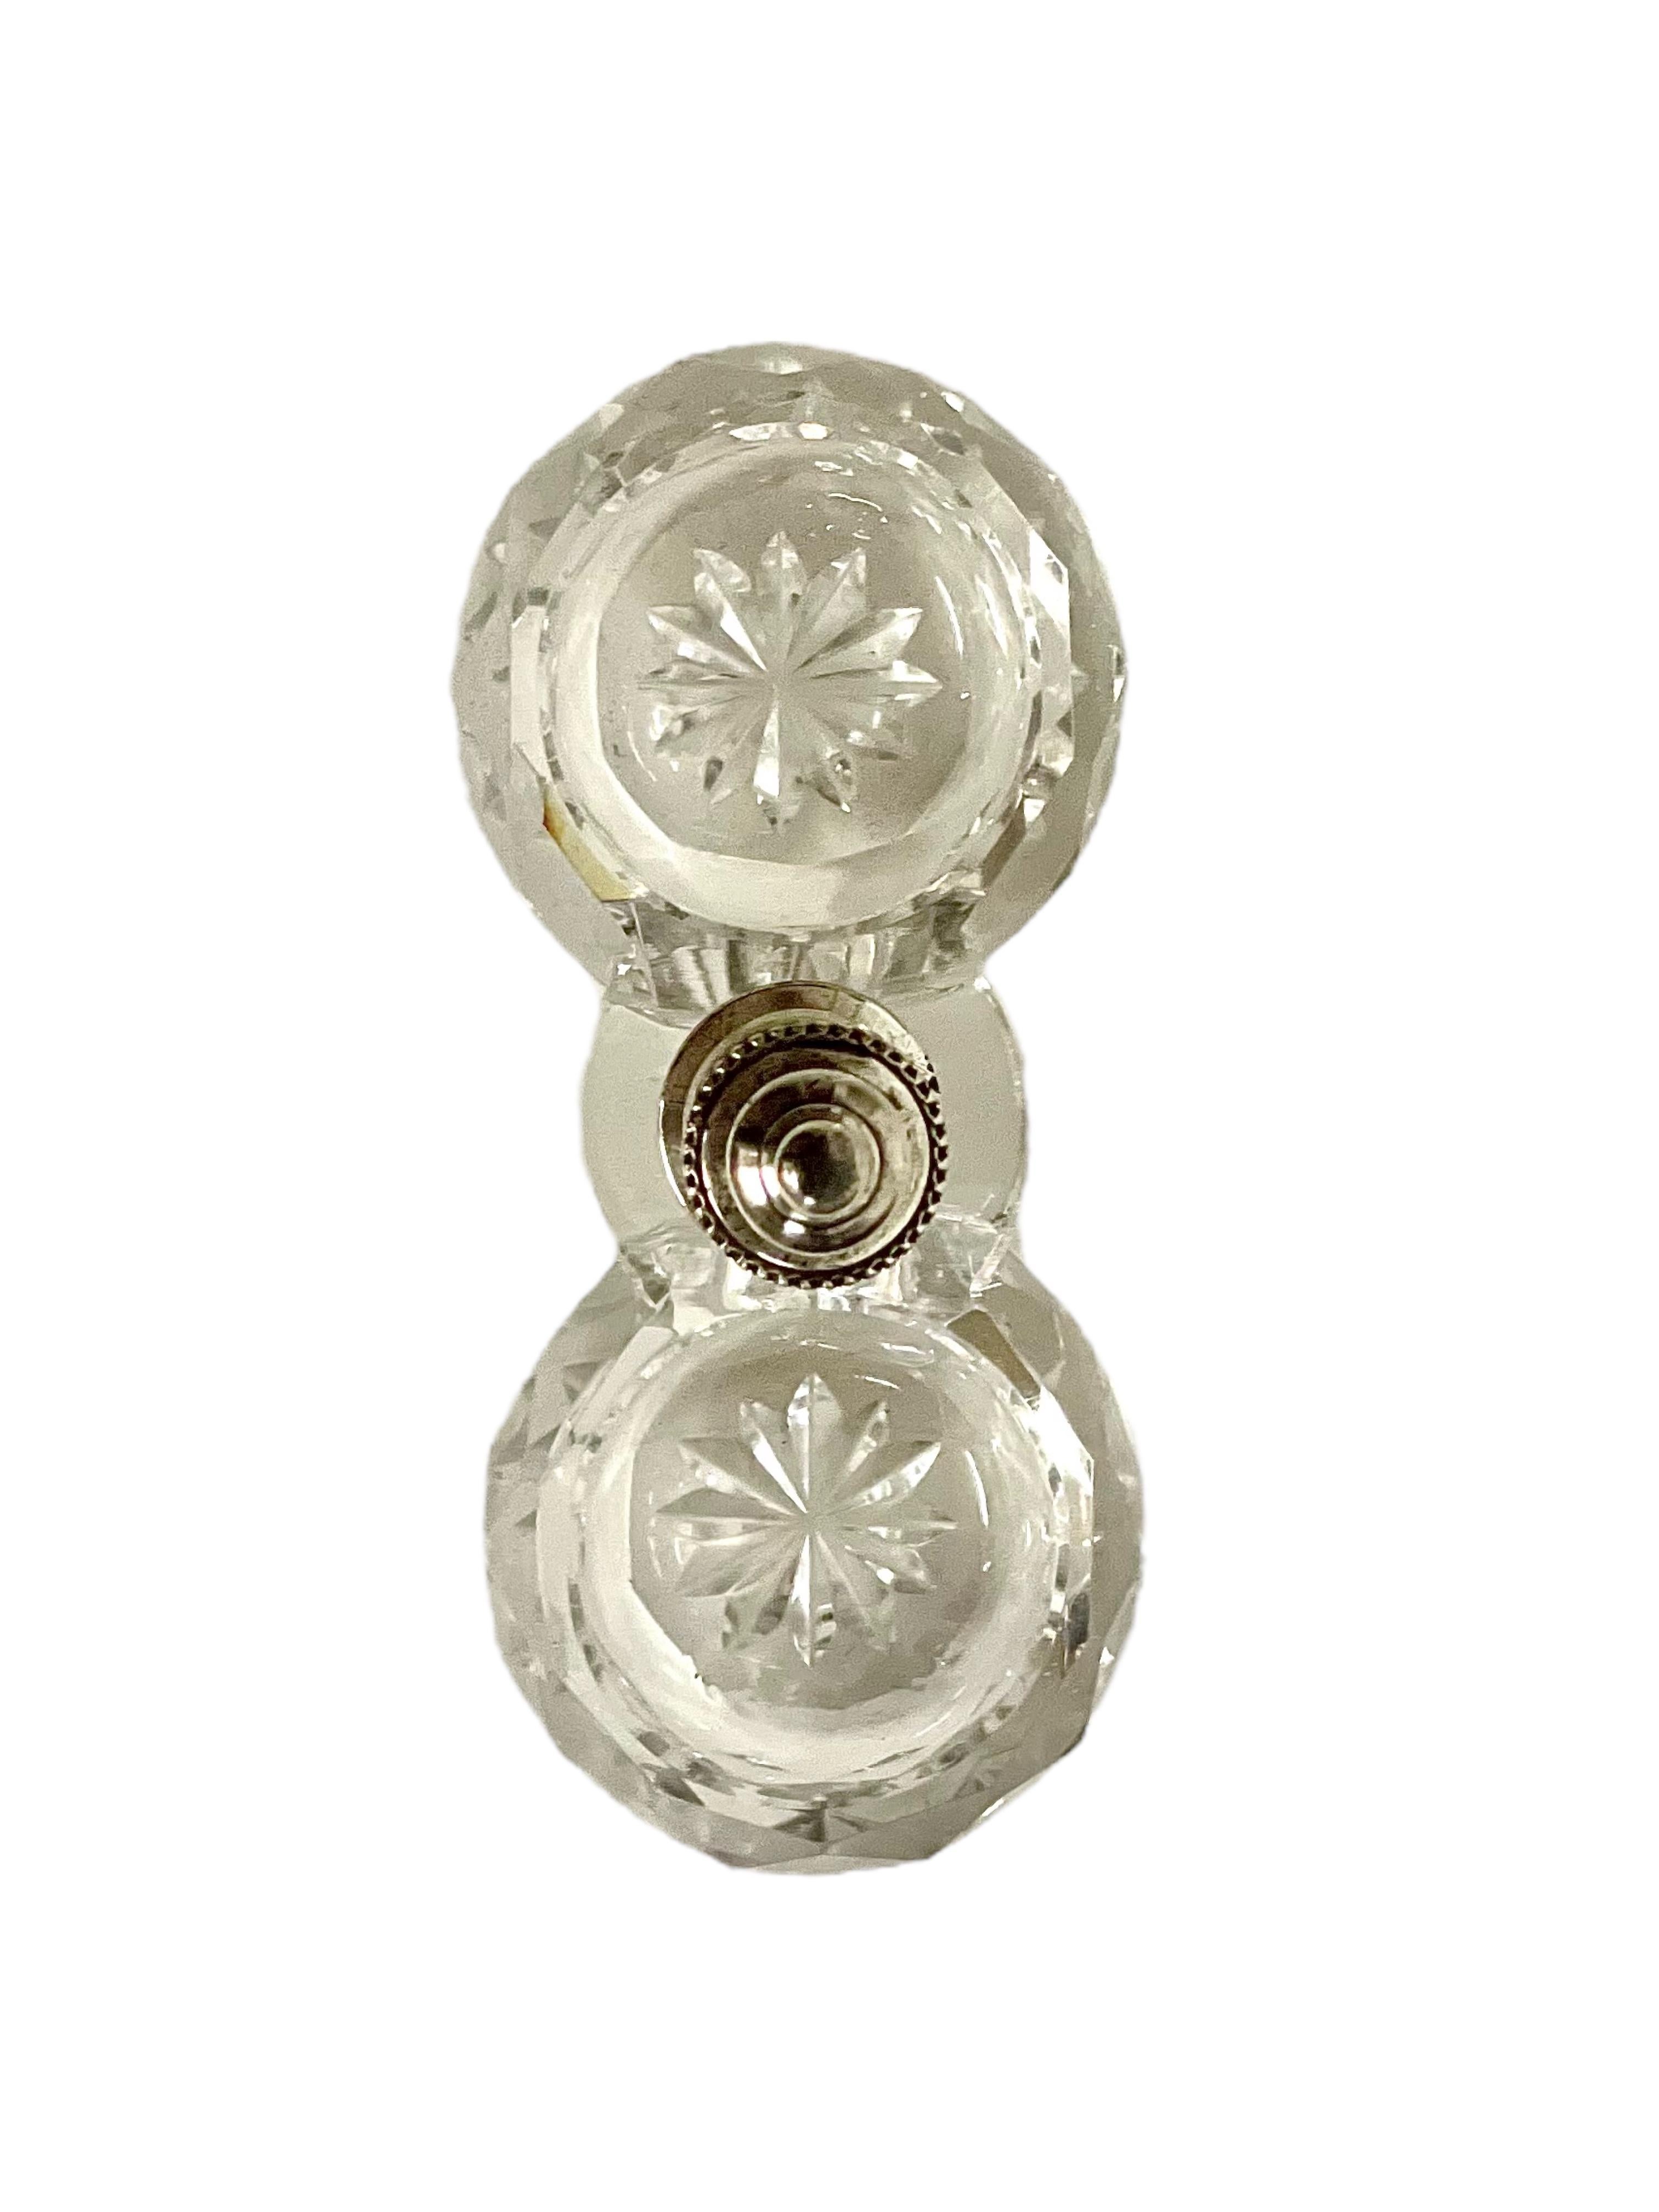 Cette double salière ouverte scintillante, fabriquée par le célèbre cristallier Baccarat, est faite d'une pièce de verre solide et d'un élégant bouton argenté surmonté d'un fleuron qui sépare les deux coupes. Chaque assiette creuse est ornée de